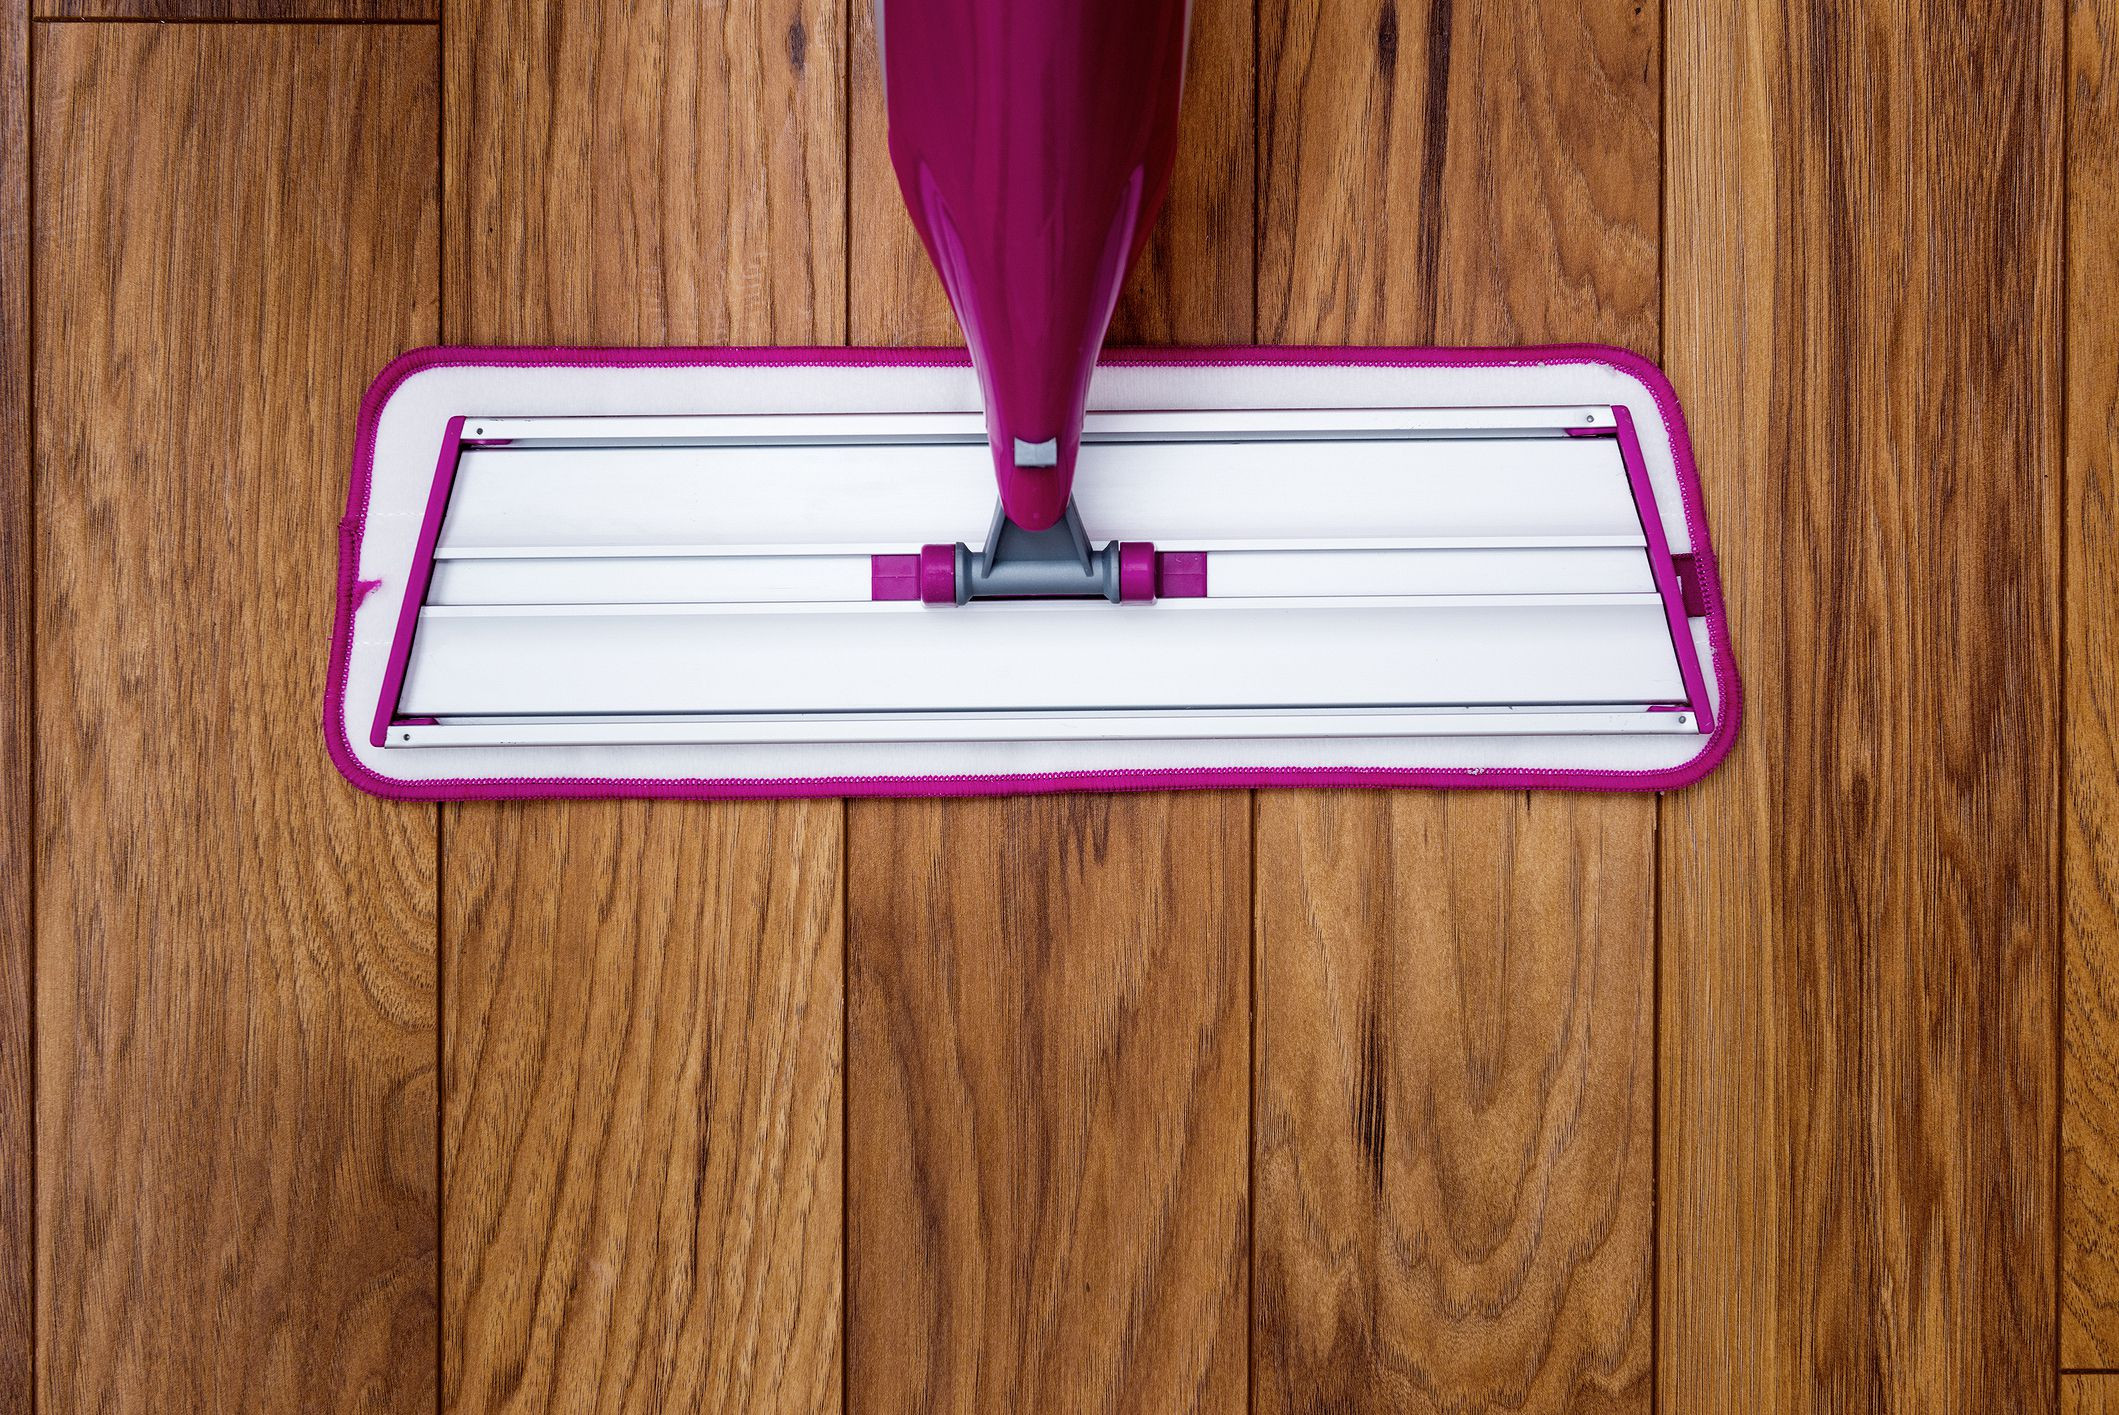 hardwood floor cleaner leaves film of the best way to clean laminate floors regarding mop gettyimages 510300933 586f0aa15f9b584db33595ee